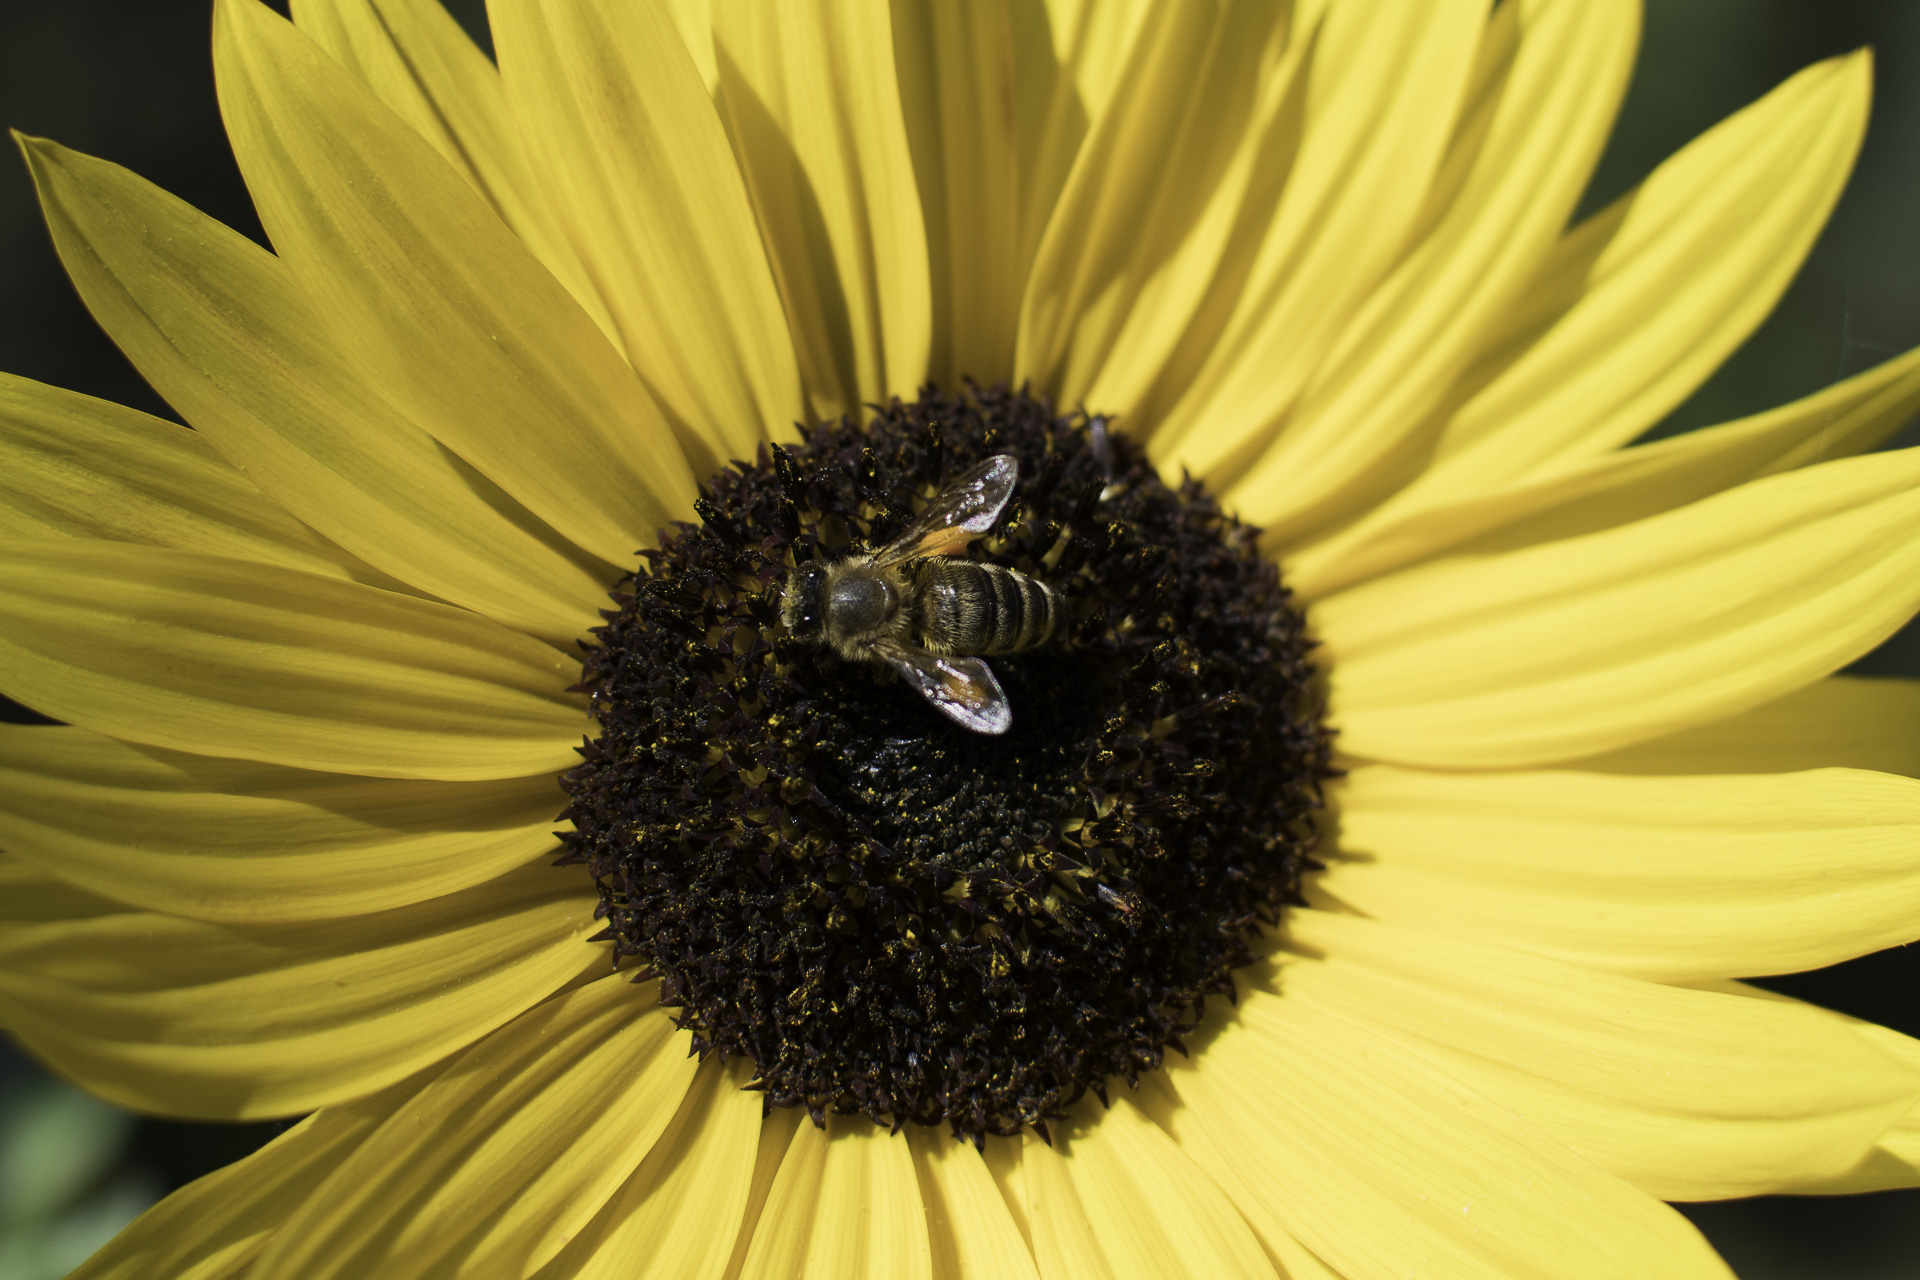 September Stimmung - Sonnenblumenblüte mit Biene